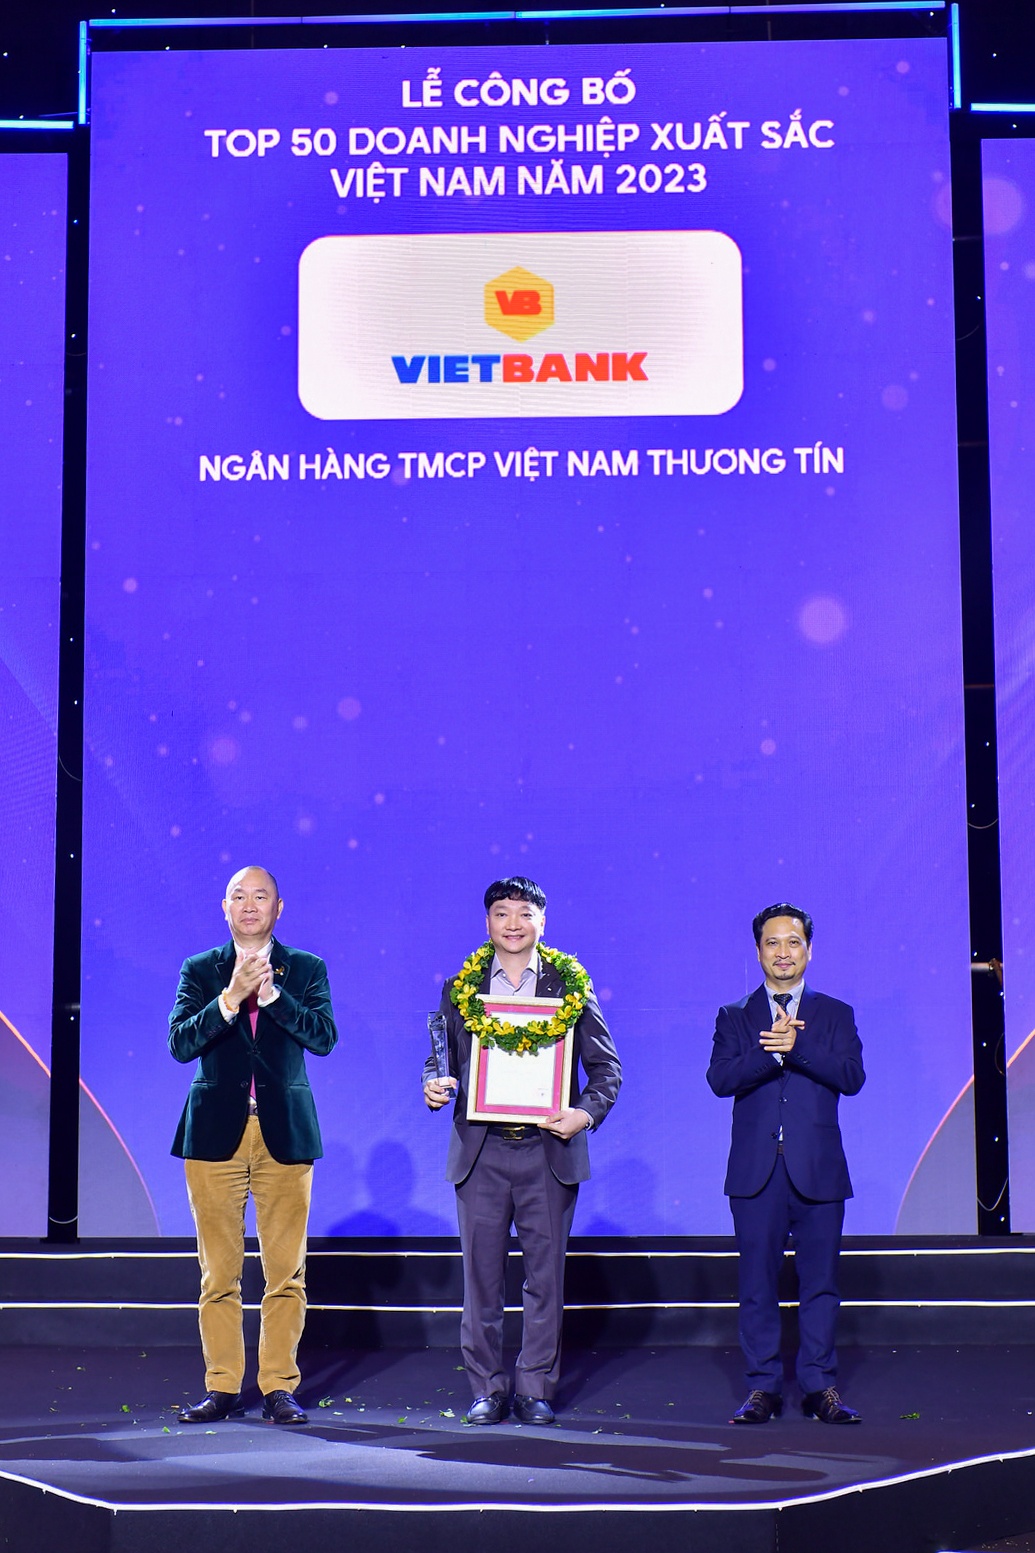 Ông Nguyễn Tiến Sỹ - Phó Tổng Giám đốc, đại diện Vietbank nhận giải thưởng.